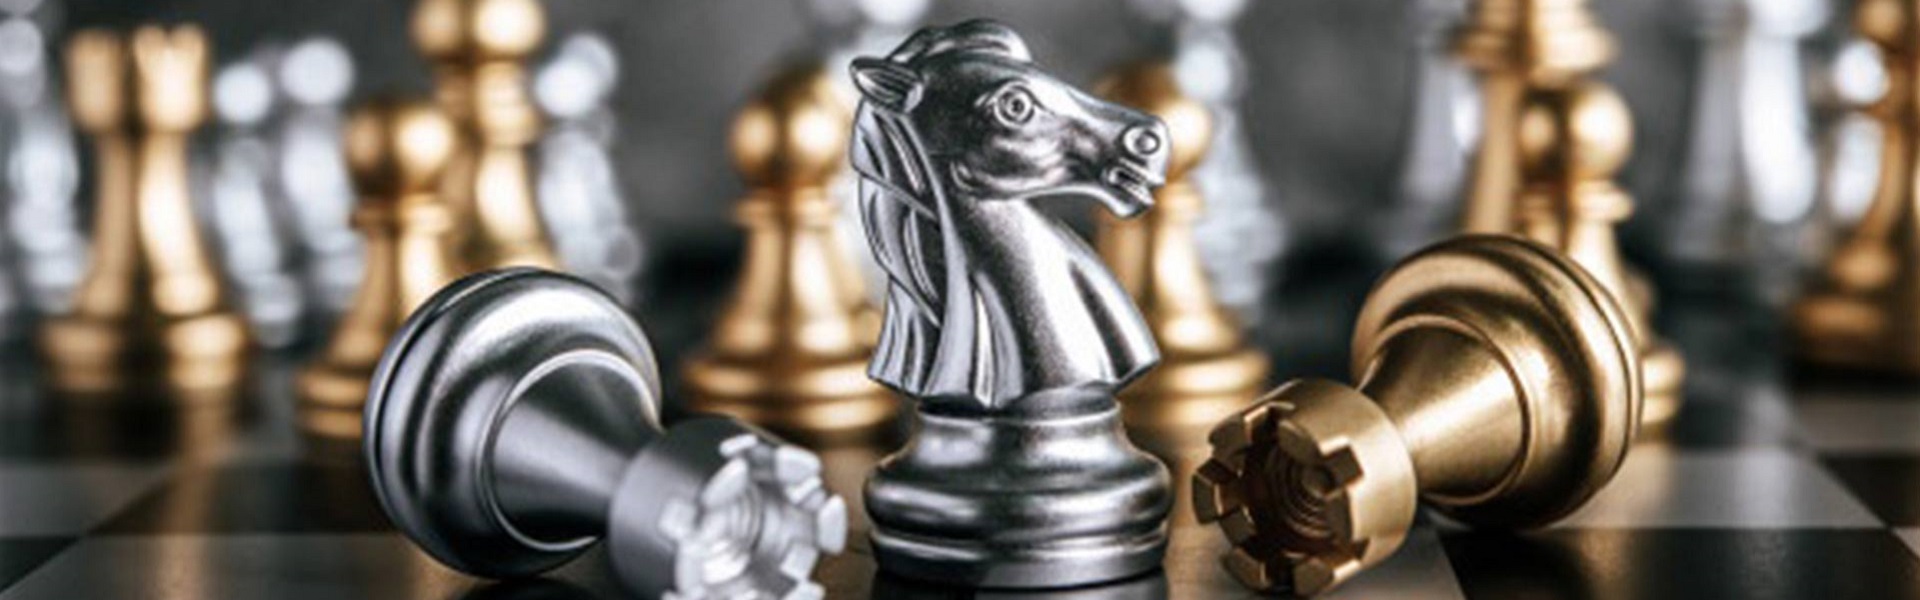 Eco aqua |  Chess lessons Dubai & New York